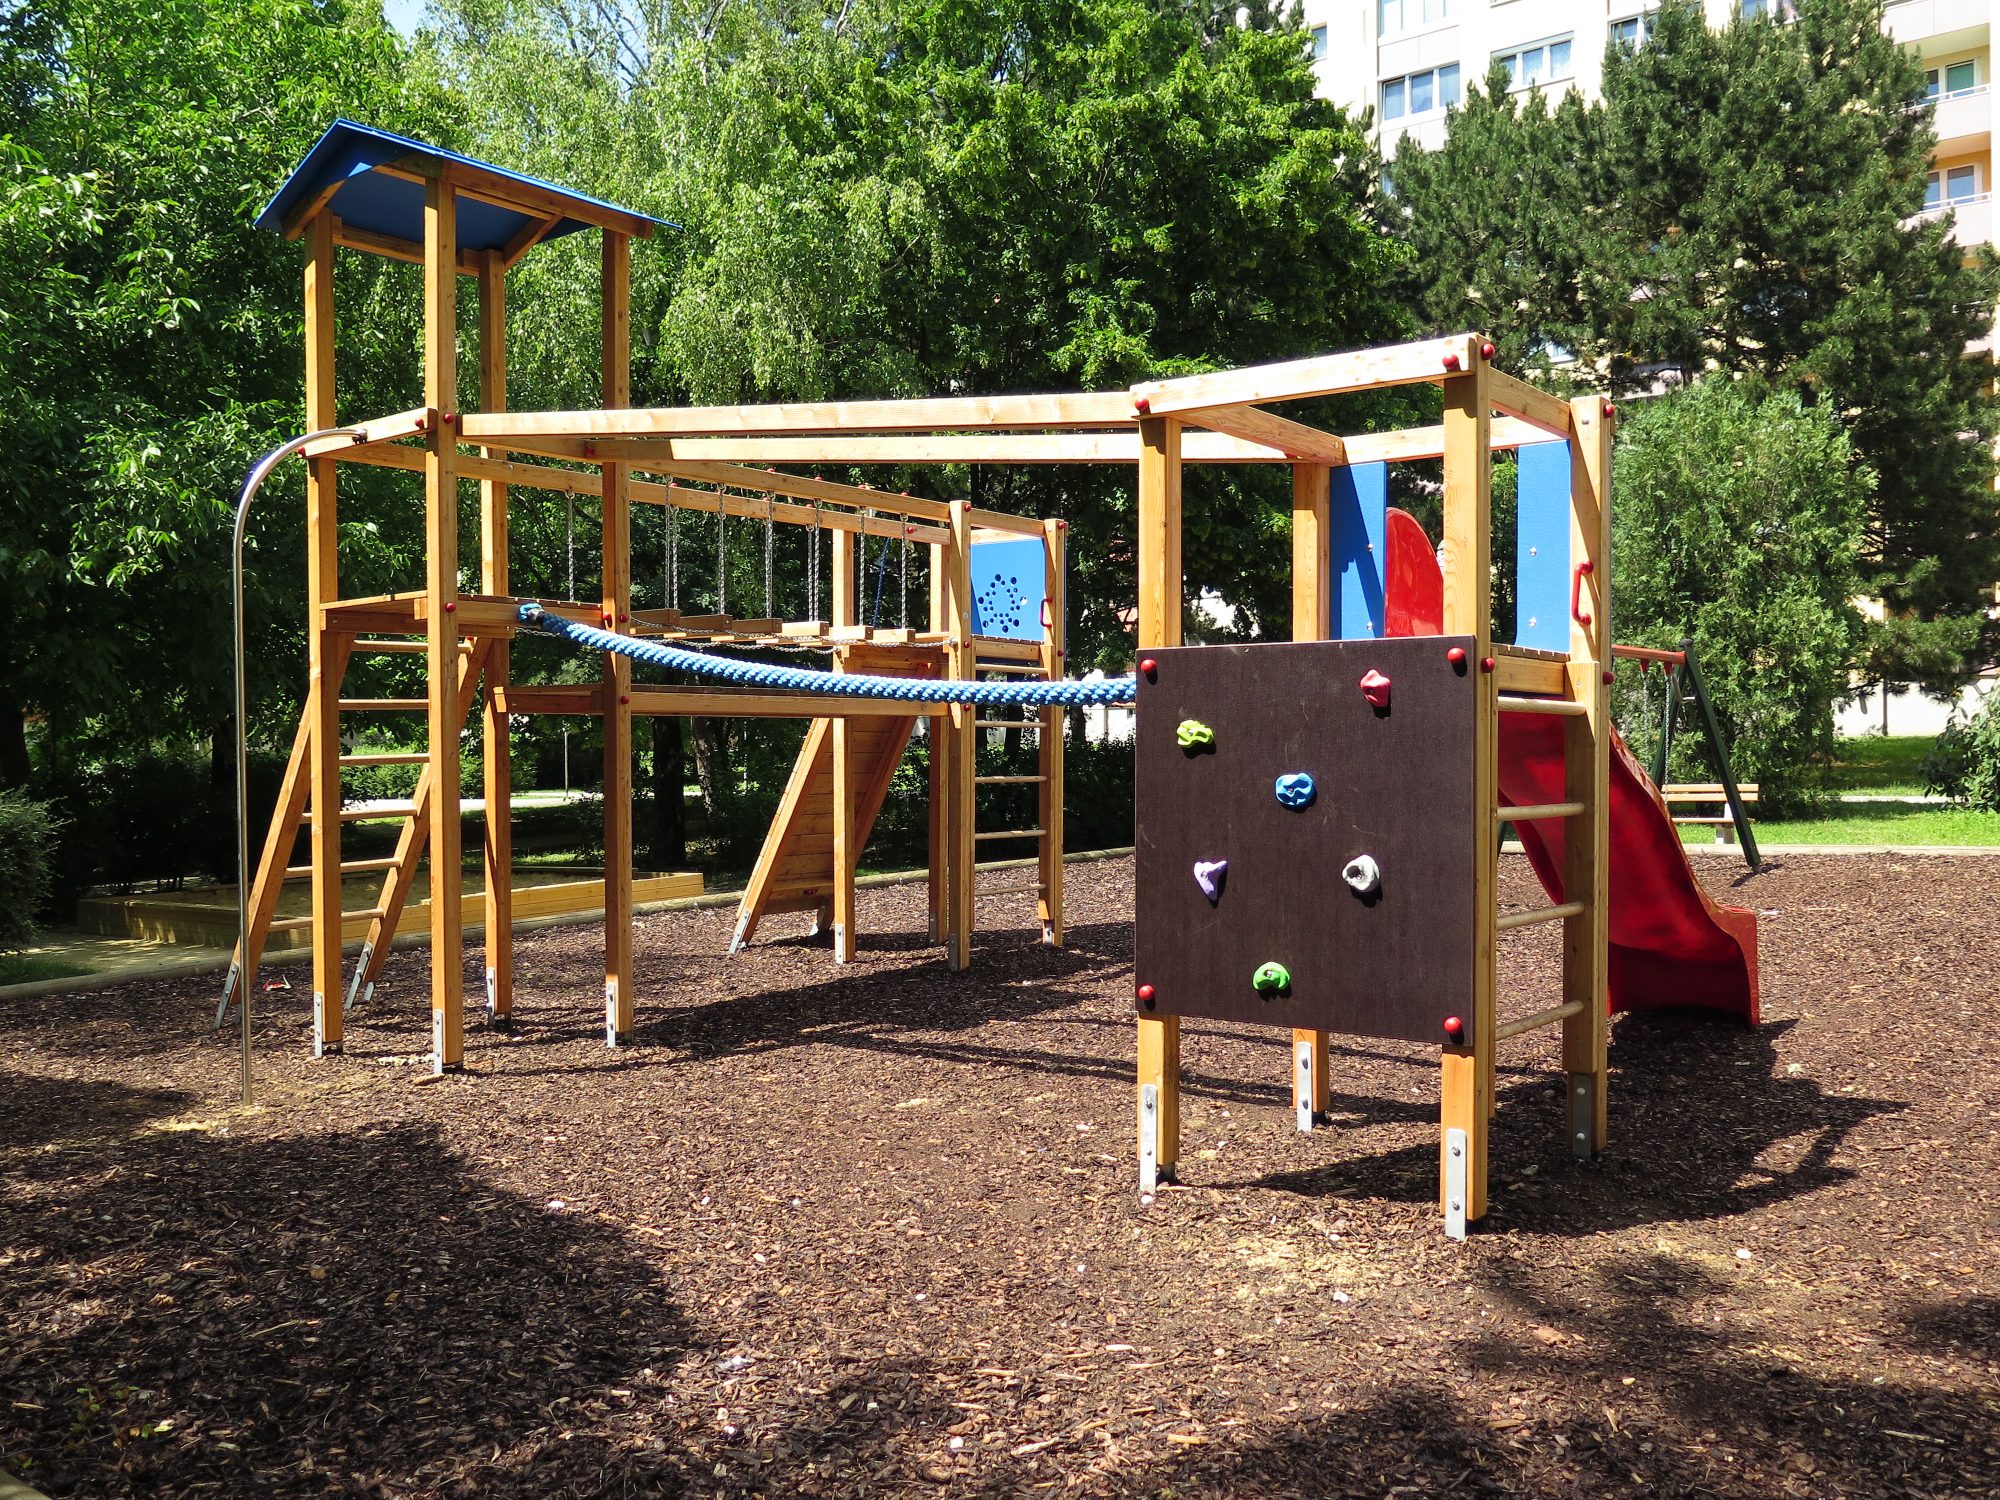 Spielplatz zum klettern, rutschen balancieren im Park